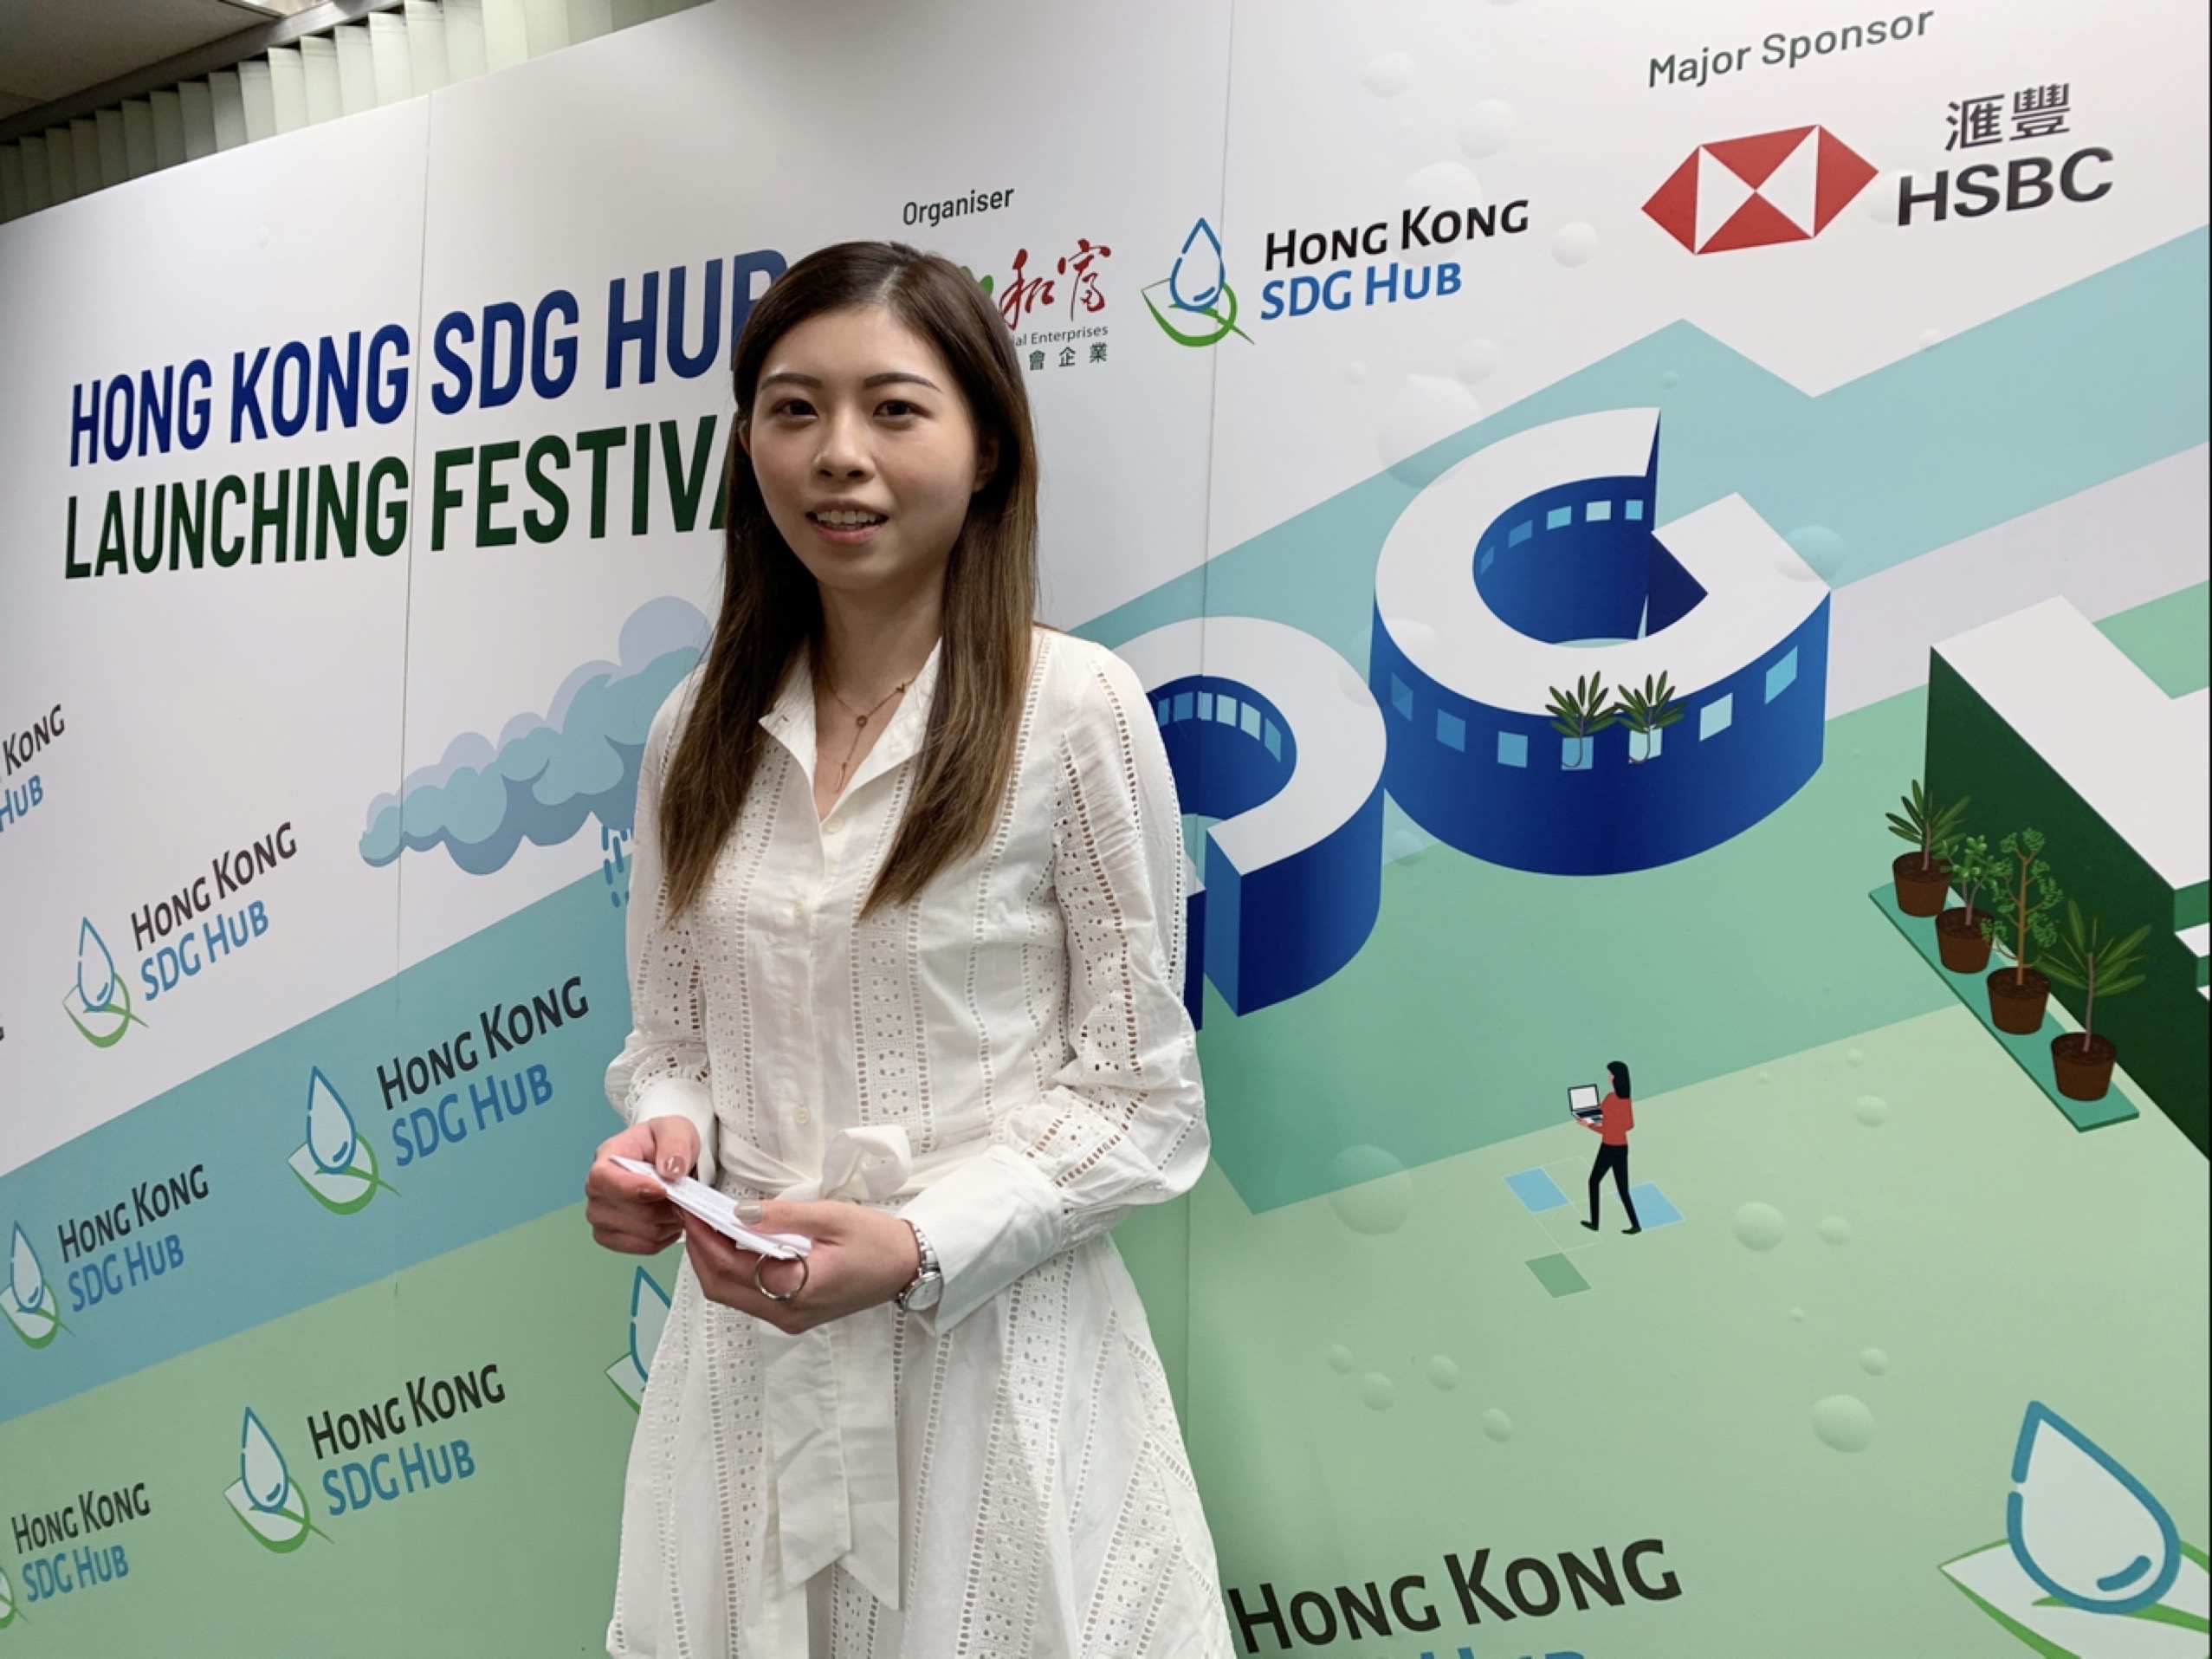 Kelly Lau 劉錦紅司儀工作紀錄: 匯豐贊助 - Hong Kong SDG Hub 活動主持